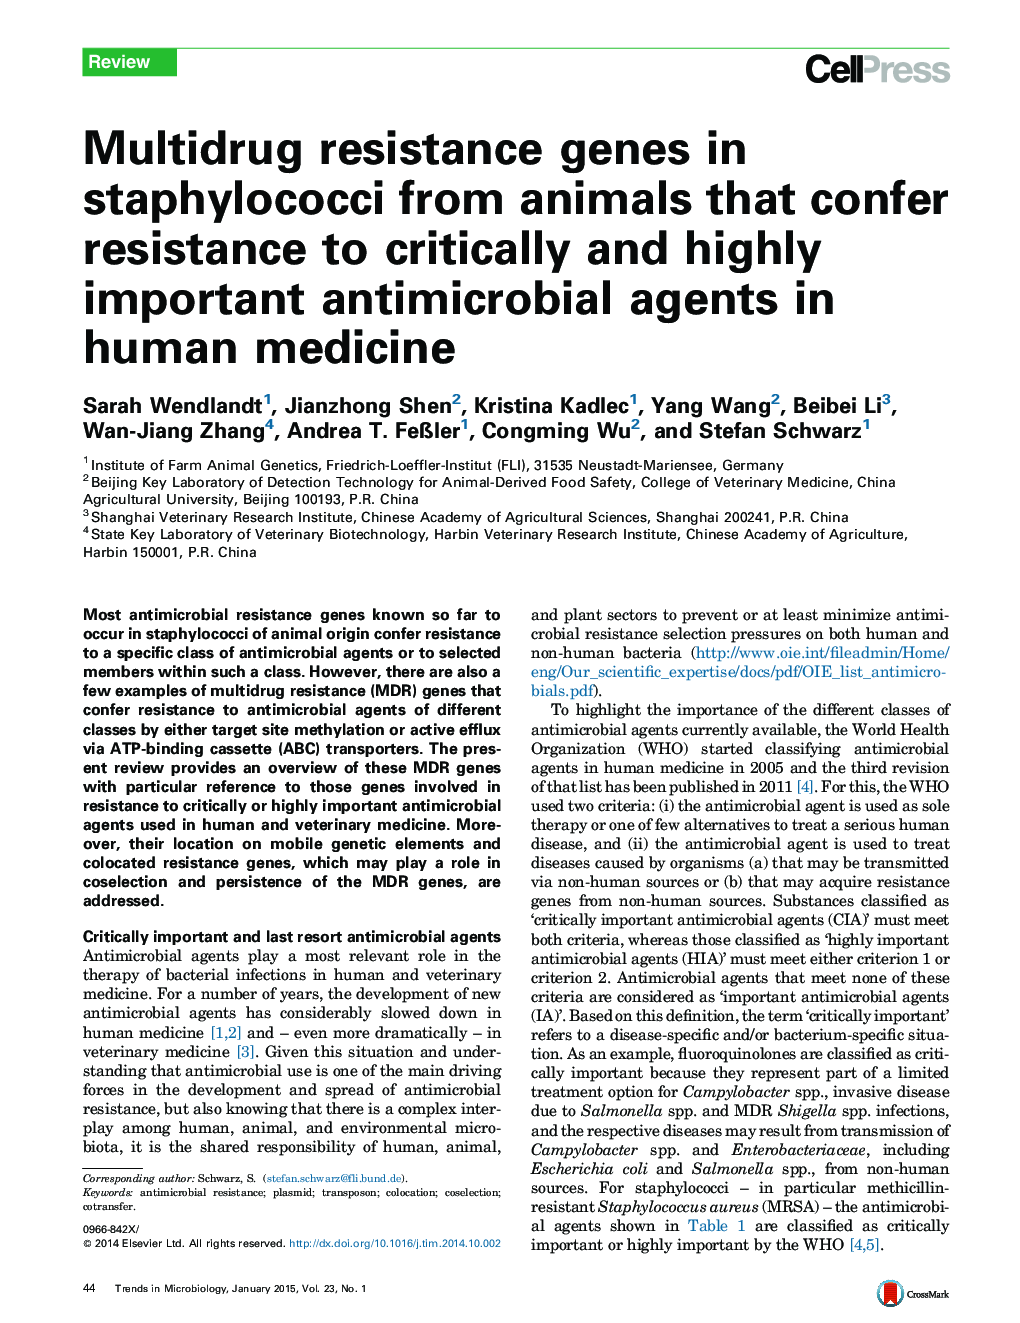 ژنهای مقاوم در برابر چندین دارو در استافیلوکوک ها از حیوانات که مقاومت در برابر عوامل مهم و مهم ضد میکروبی در پزشکی انسانی را تأمین می کنند 